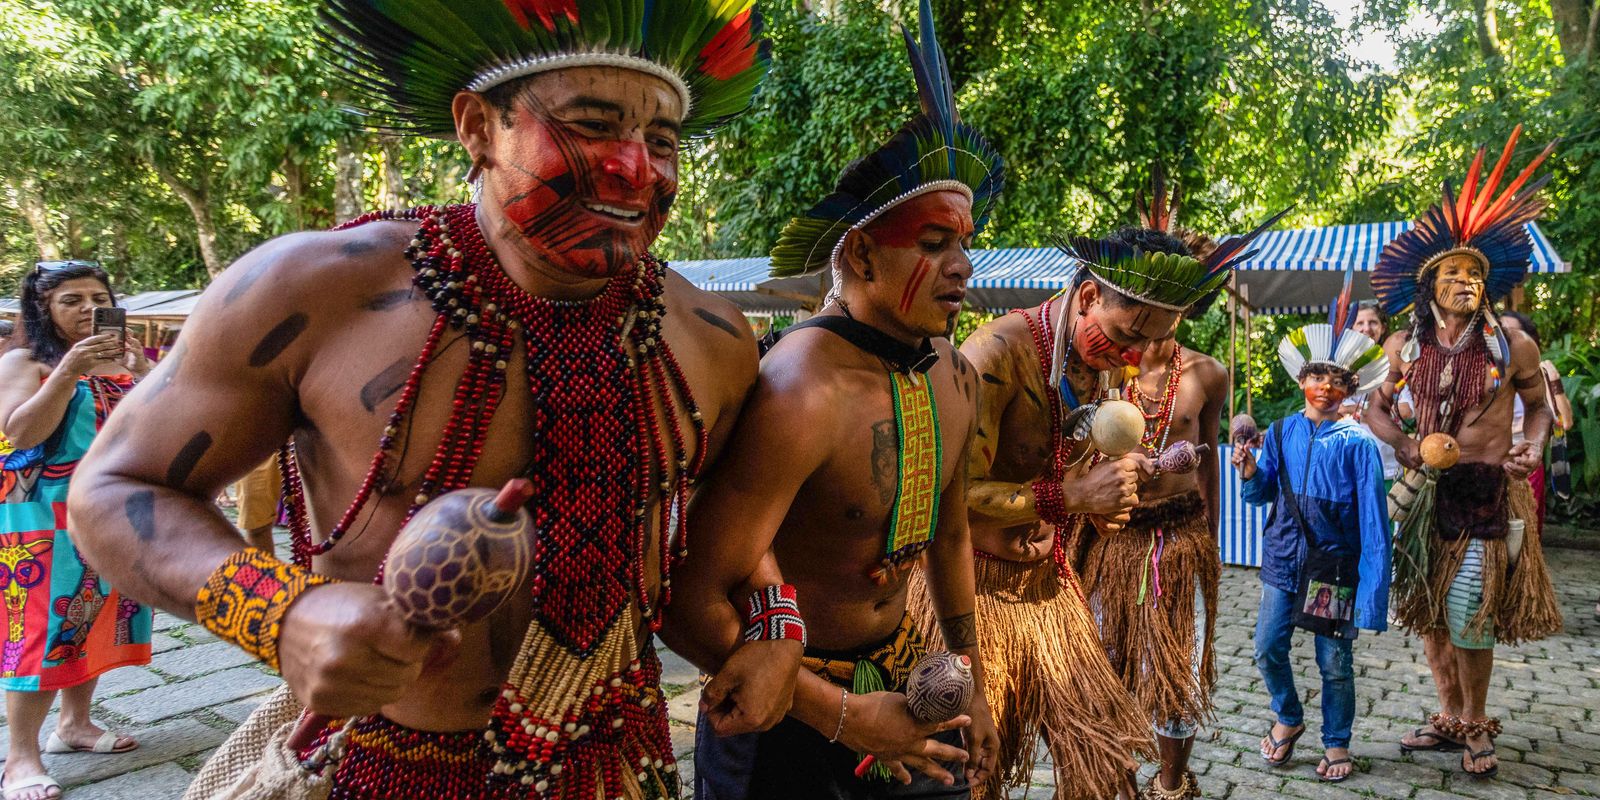 Feira aberta ao público reúne indígenas de mais de 30 etnias no Rio